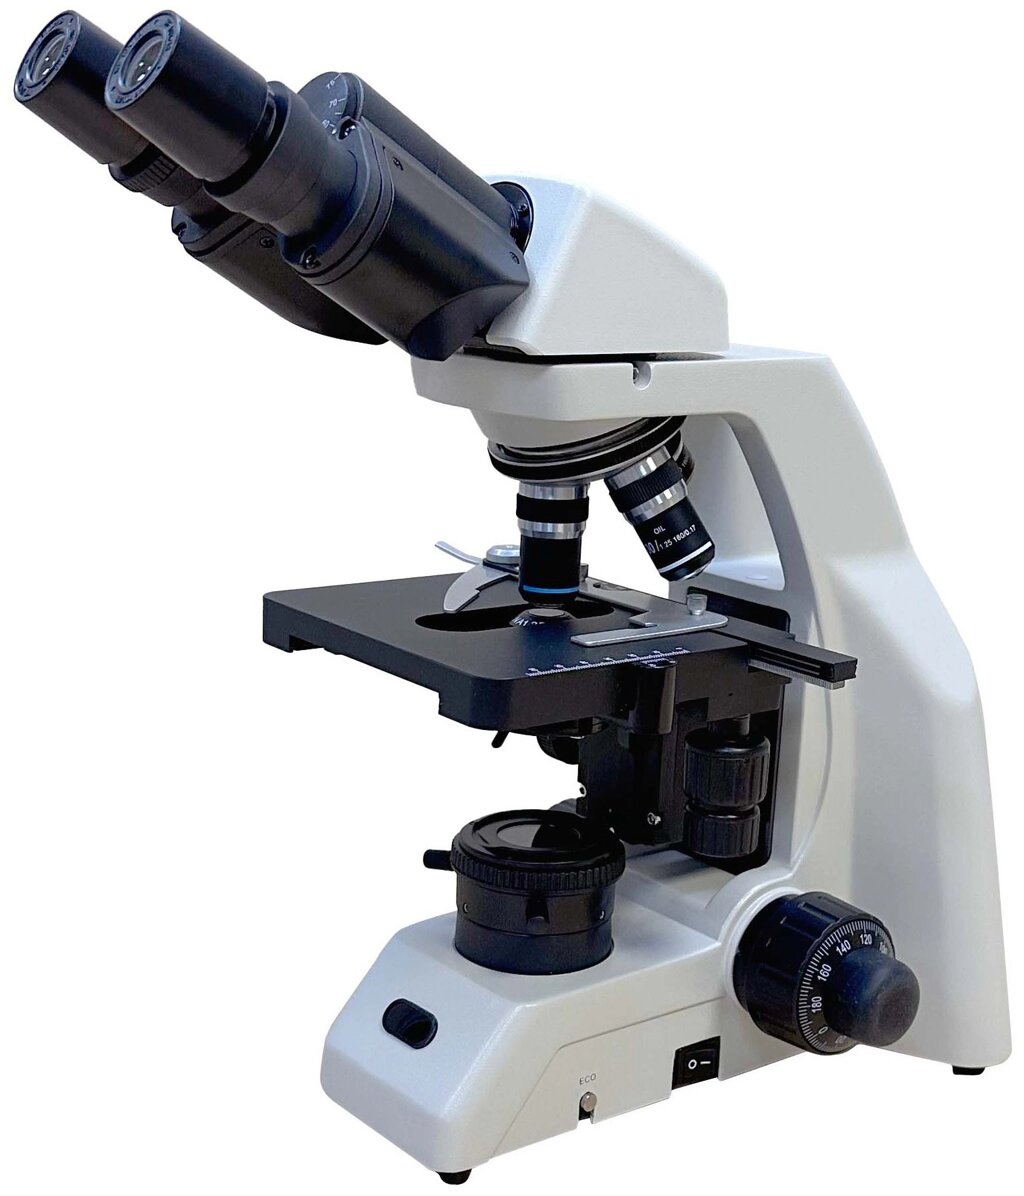 Микроскоп лабораторный Levenhuk MED A1000КLED-2 от компании ООО "АССЕРВИС" лабораторное оборудование и весы по низким ценам. - фото 1